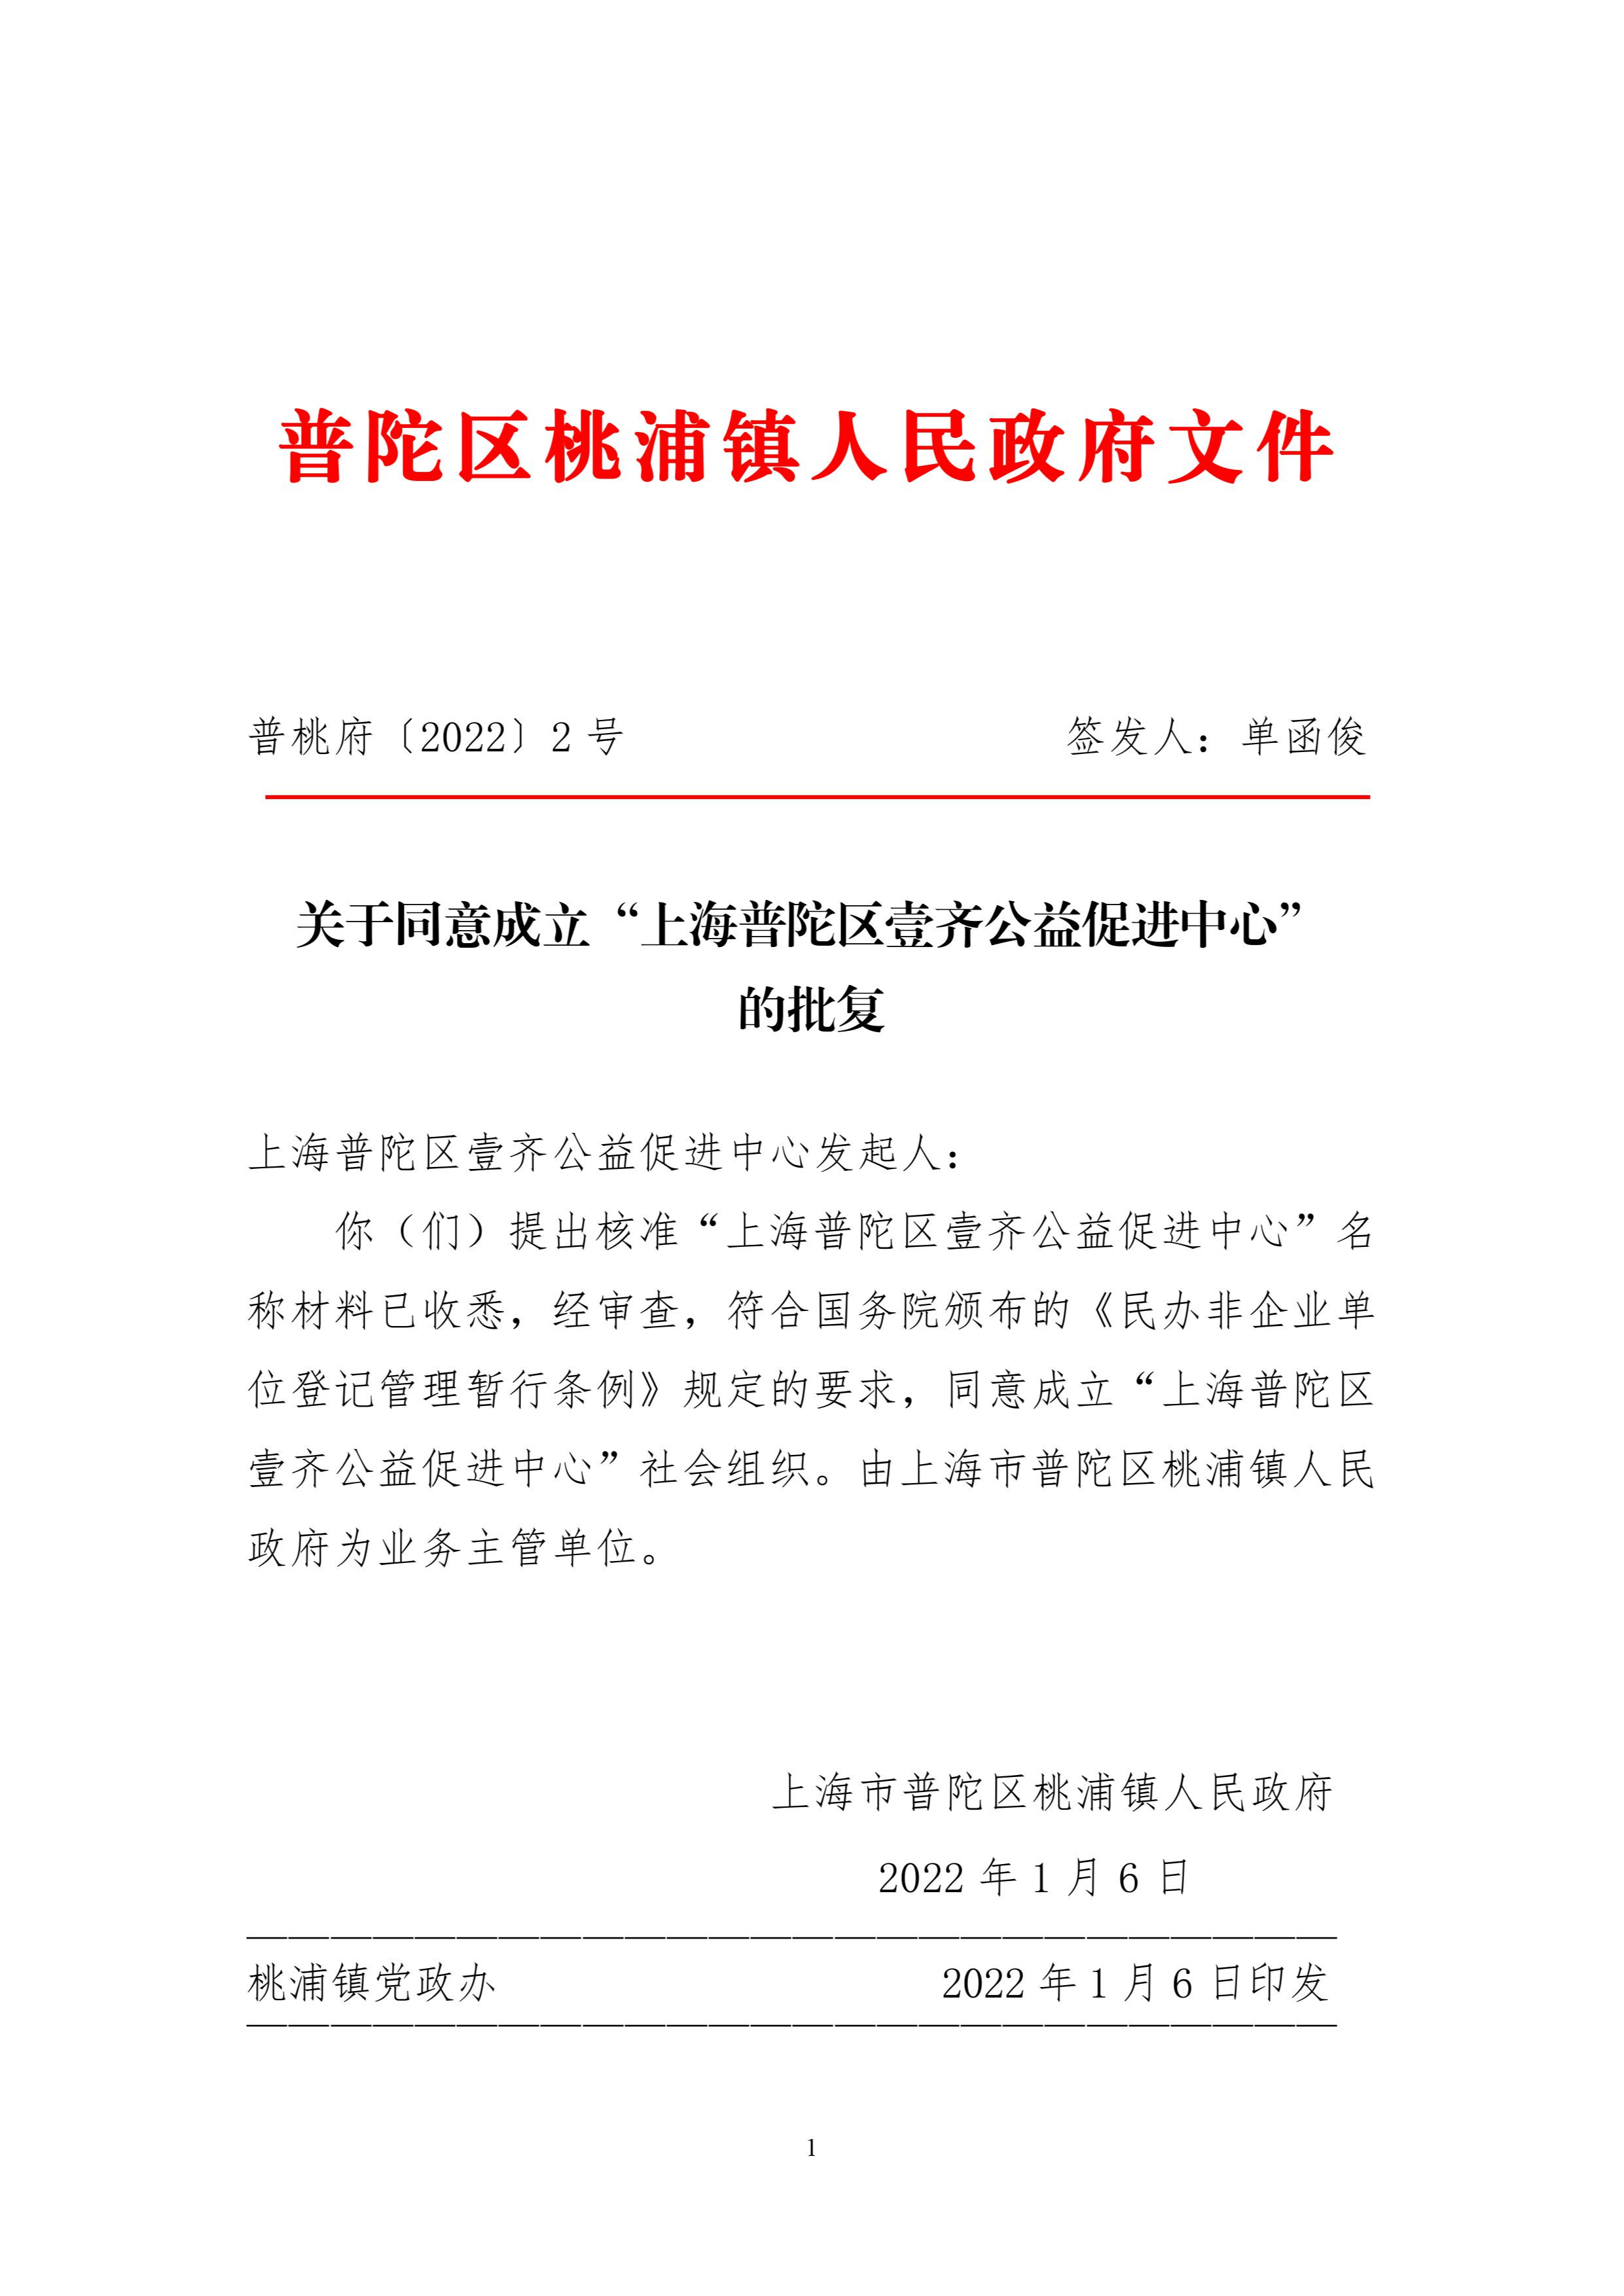 关于同意成立“上海普陀区壹齐公益促进中心”的批复